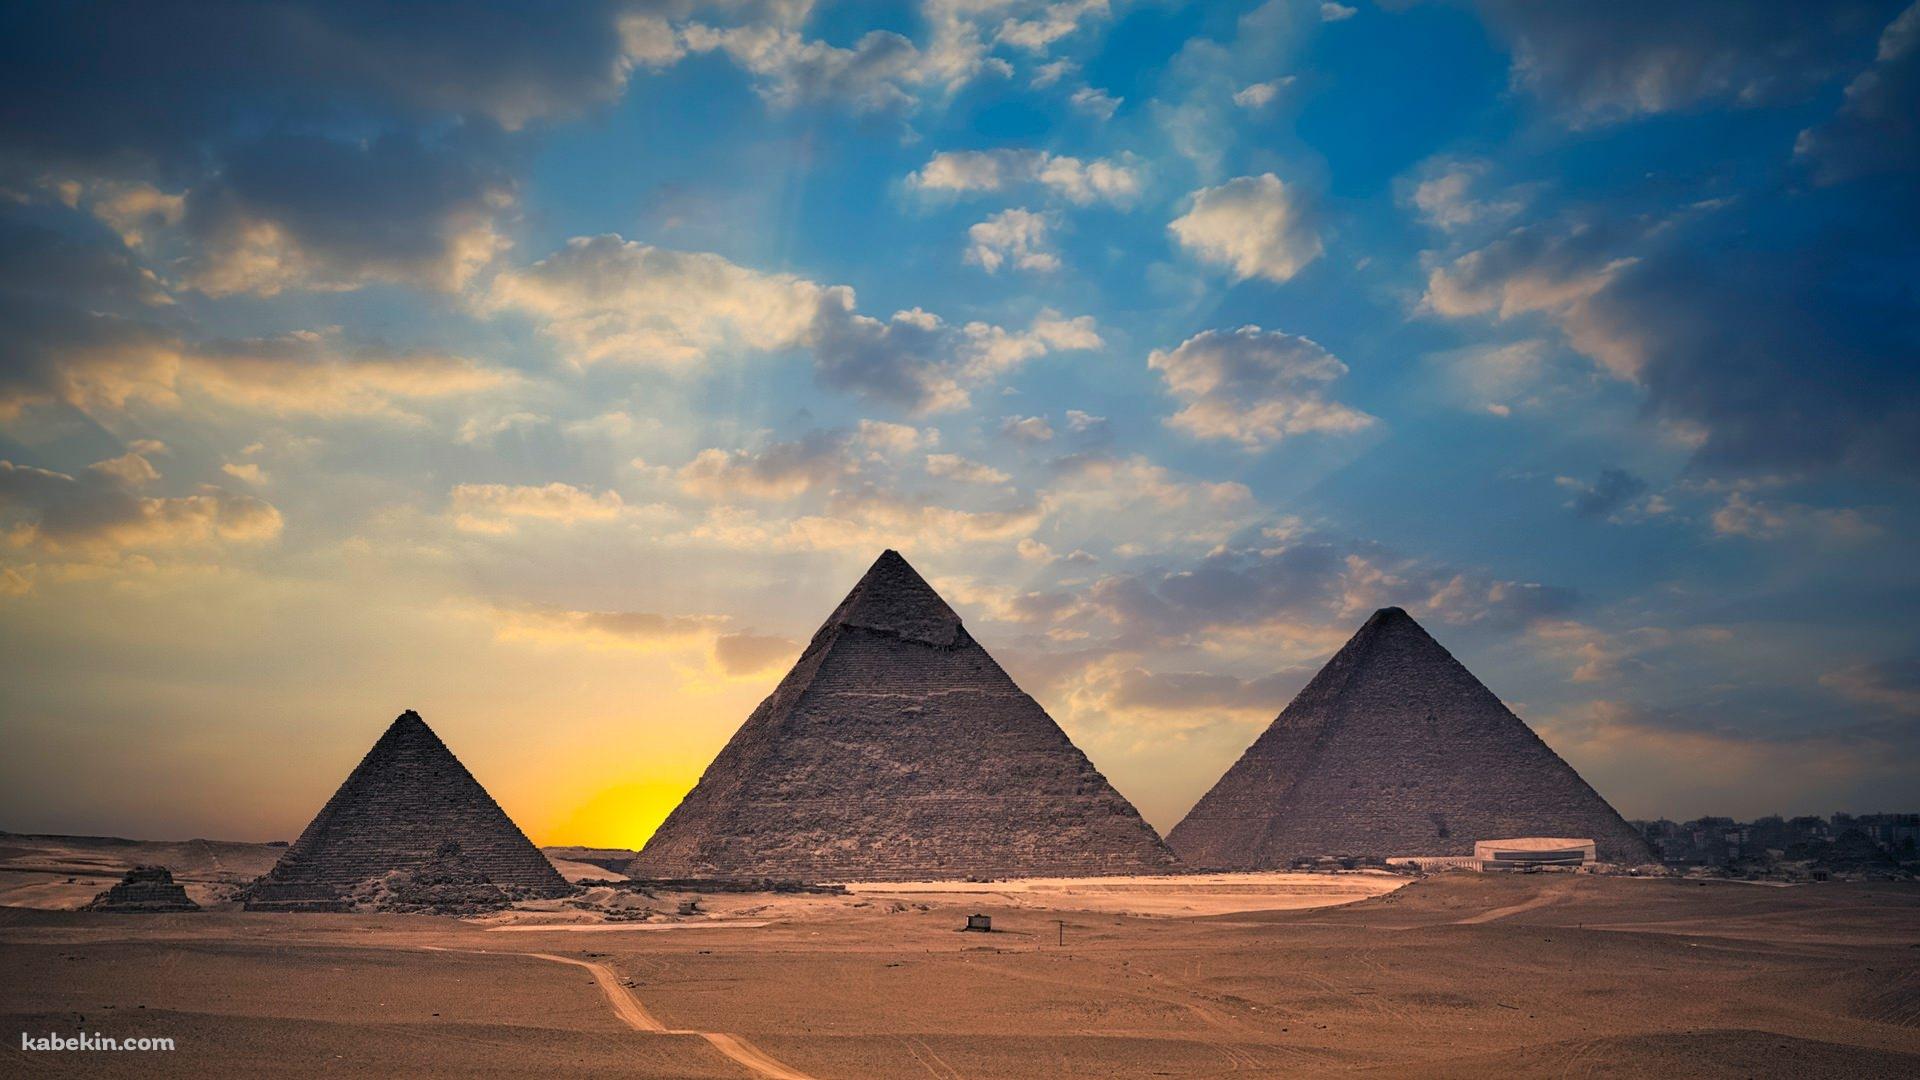 エジプトのピラミッドの壁紙(1920px x 1080px) 高画質 PC・デスクトップ用